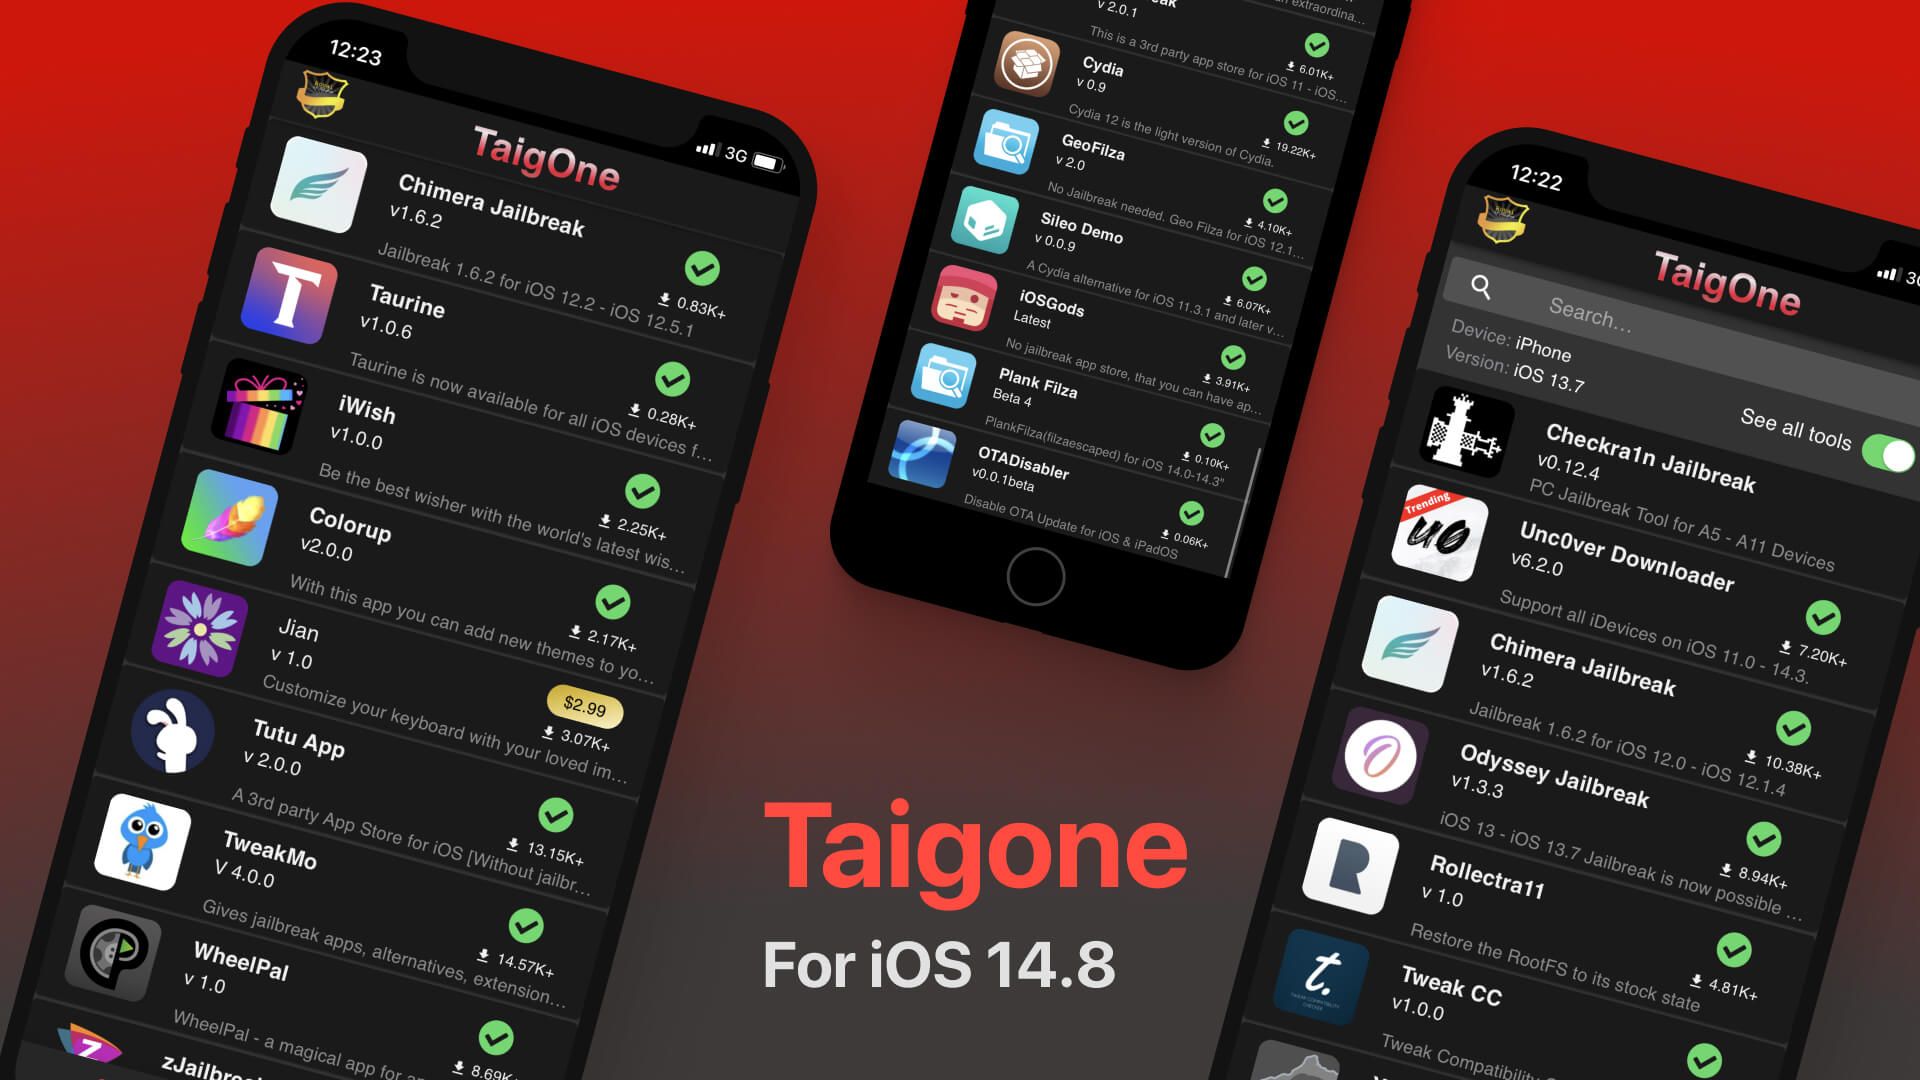 Taigone for iOS 14.8